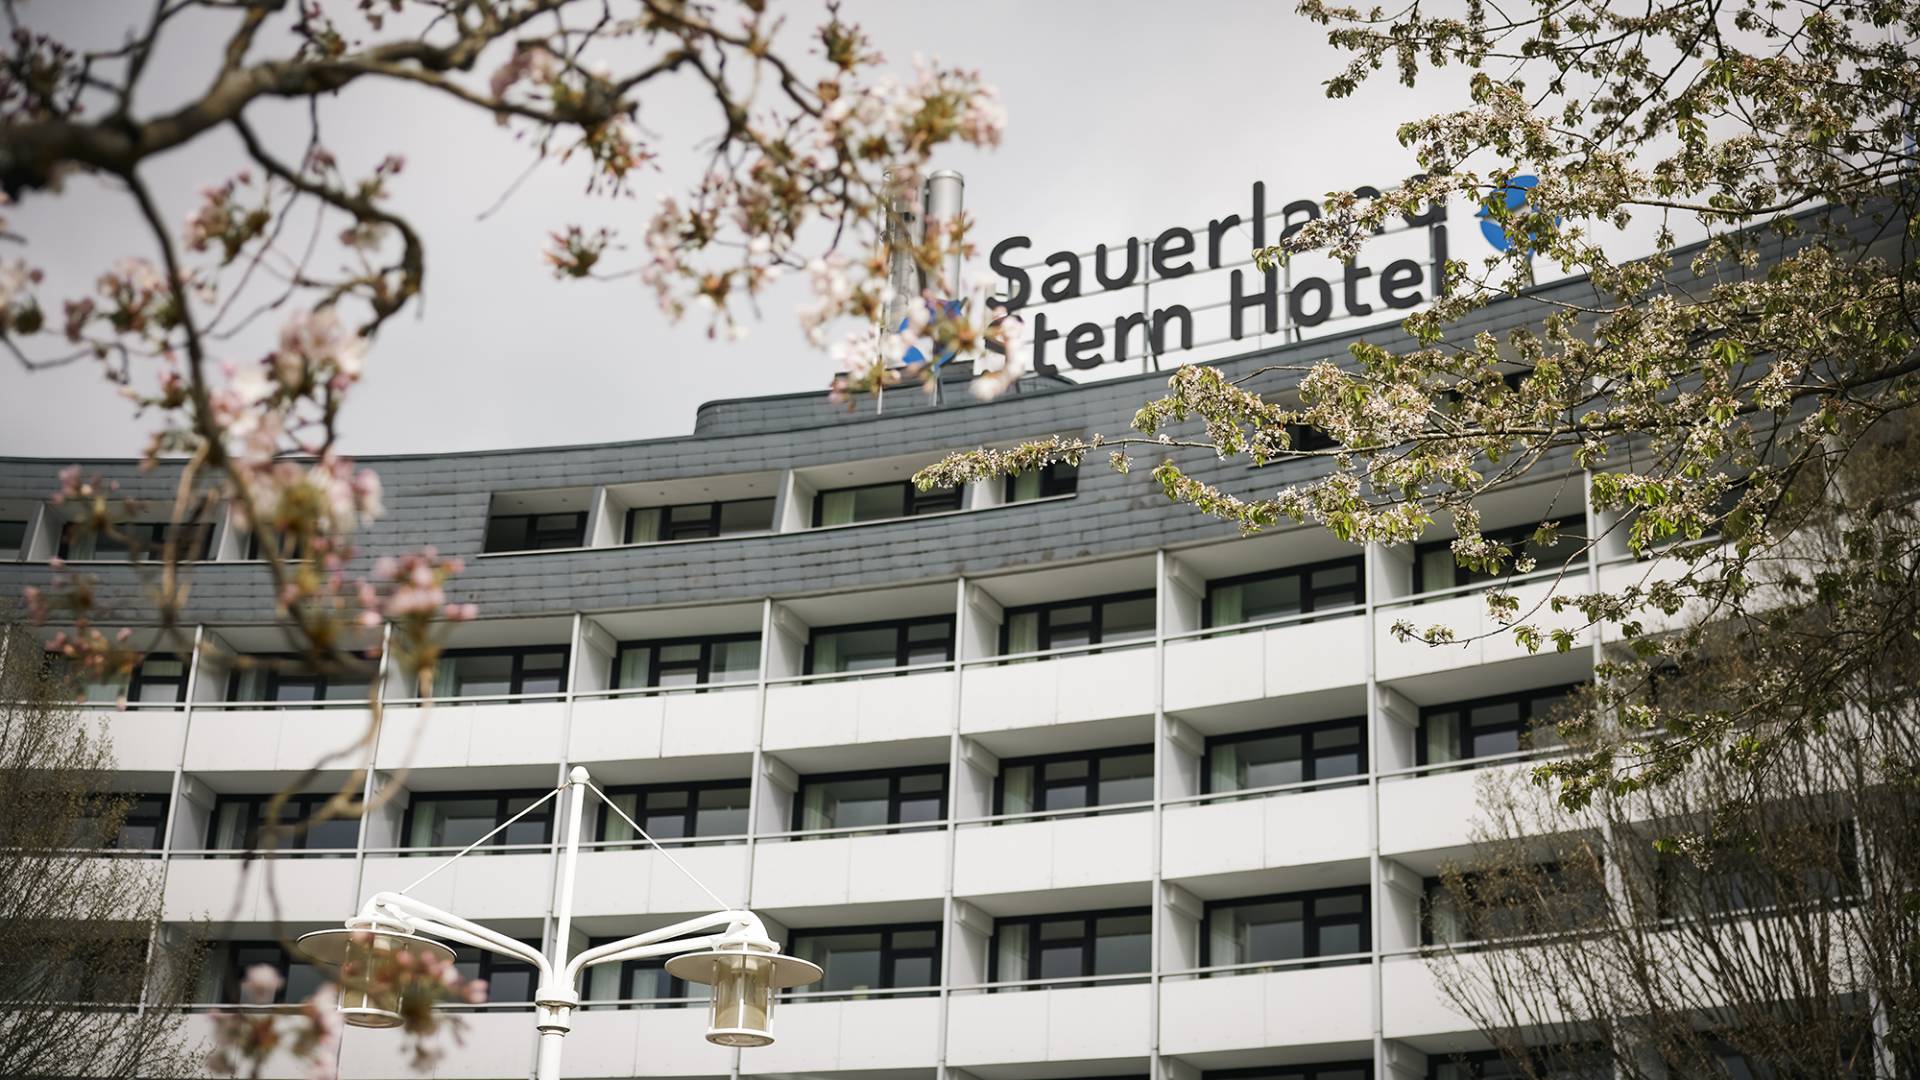 Außenansicht Sauerland Stern Hotel mit Schriftzug auf dem Gebäude